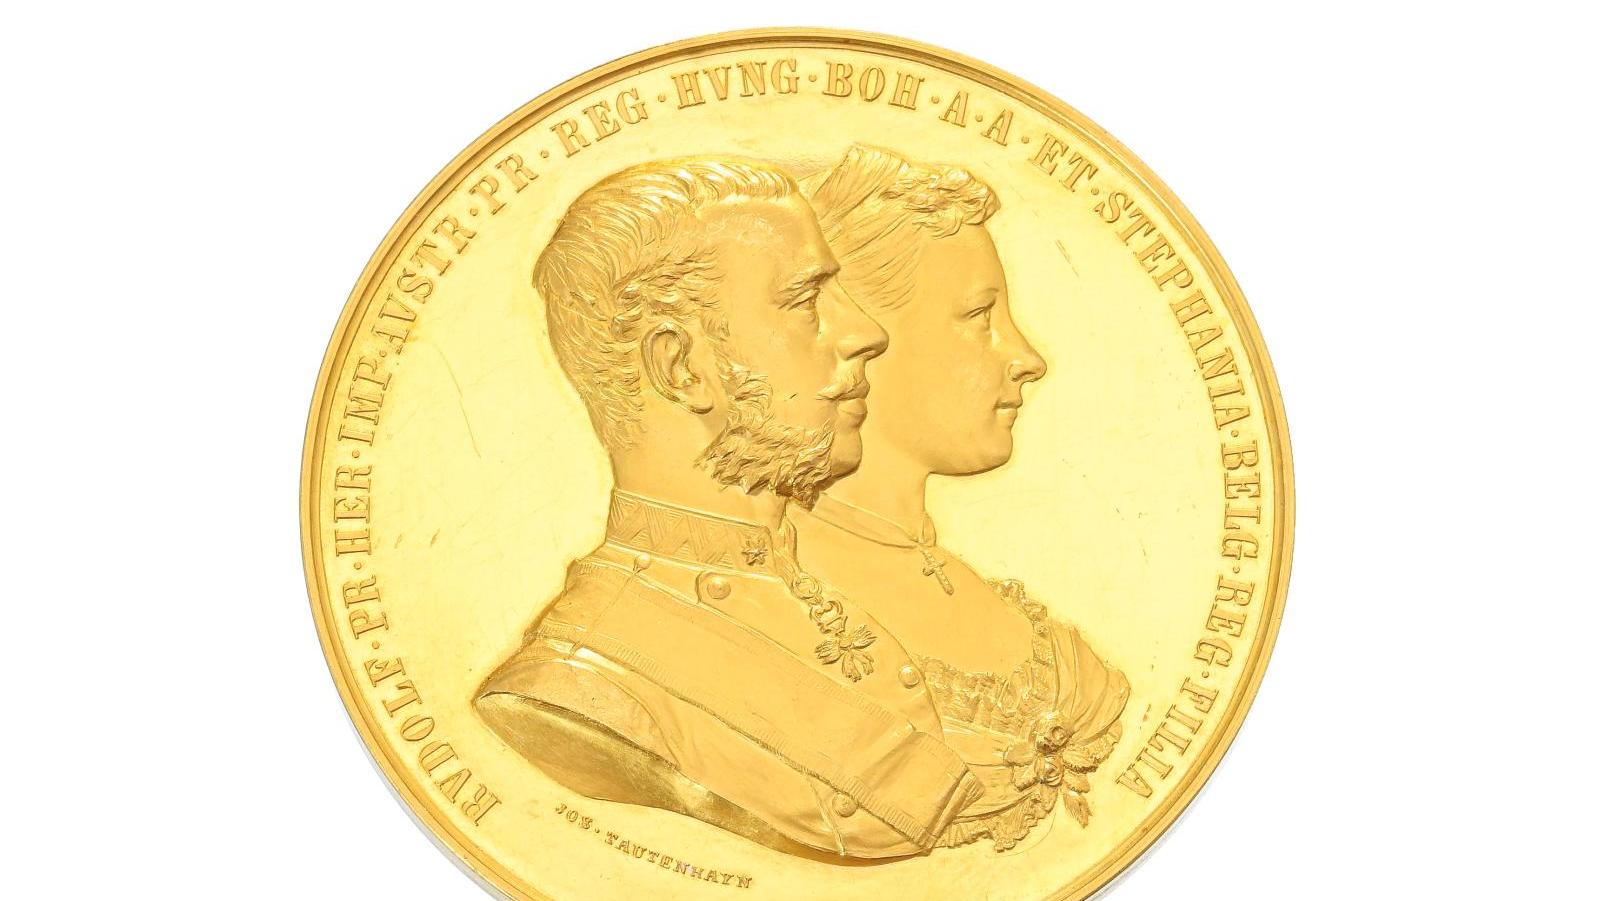 Vienne, Empire d’Autriche, Joseph Tautenhayn (1837-1911), médaille commémorative... L’or des Habsbourg